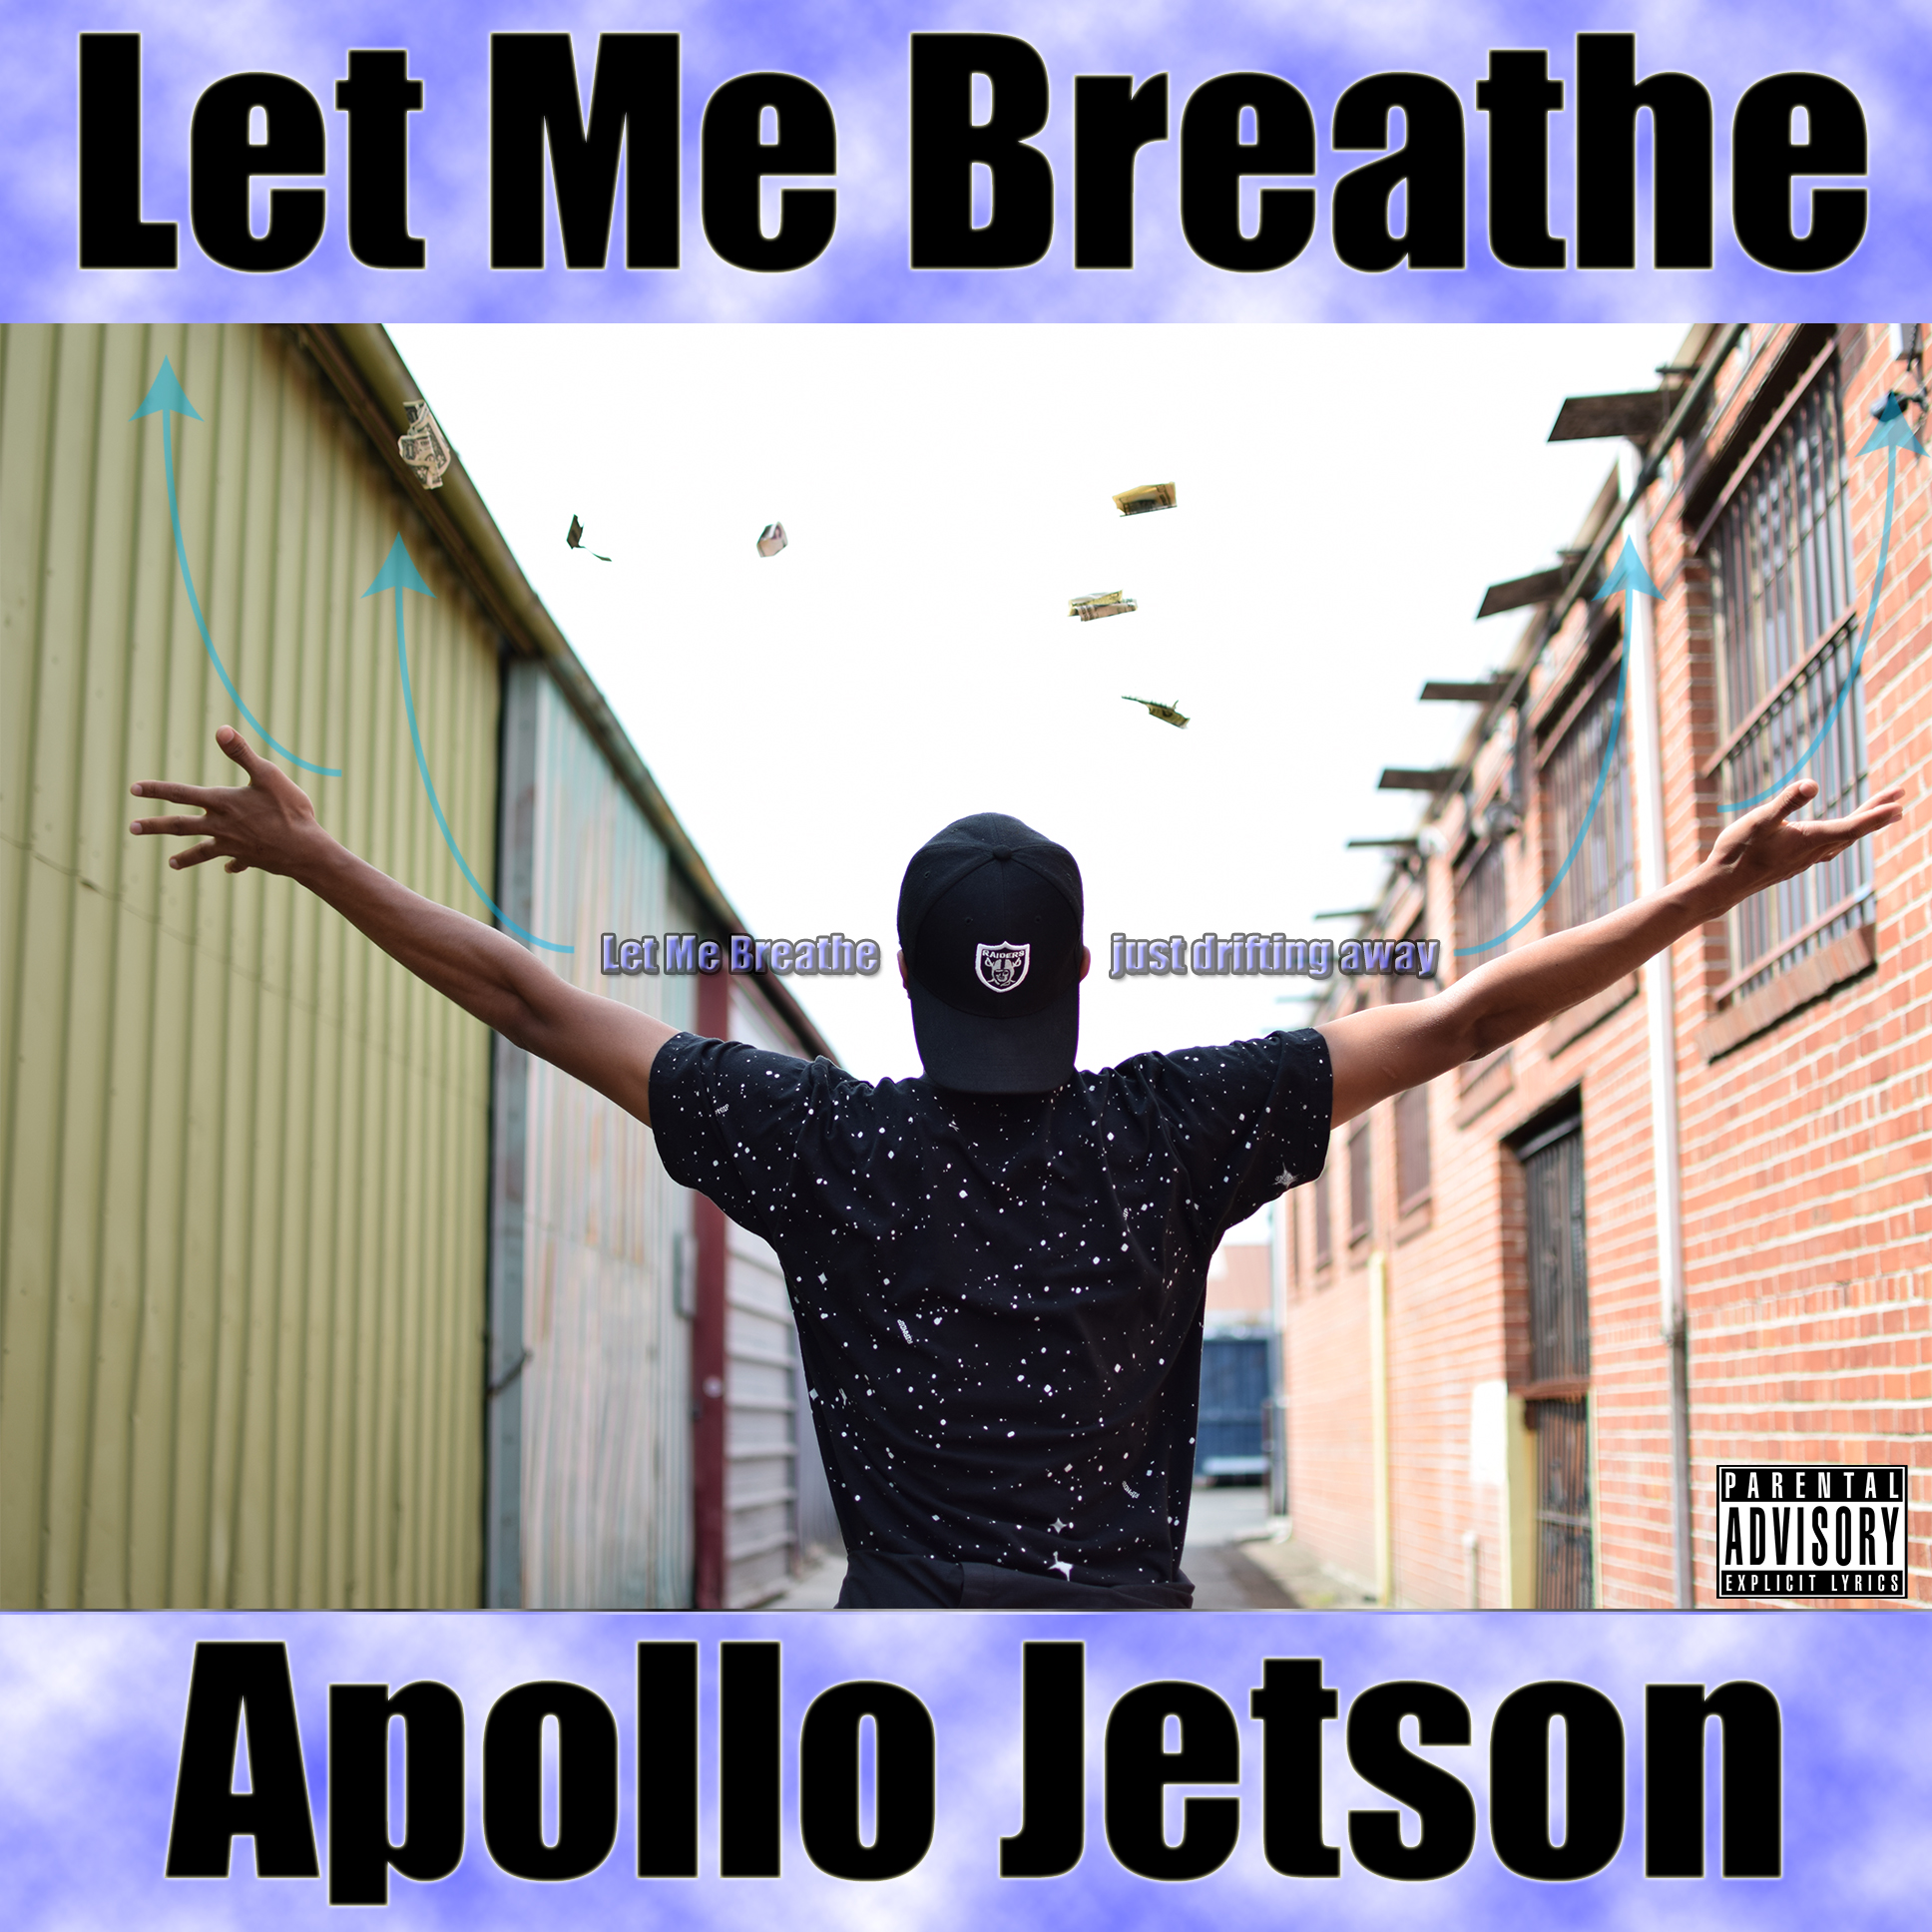 Apollo Jetson - Let Me Breathe [Thizzler.com]